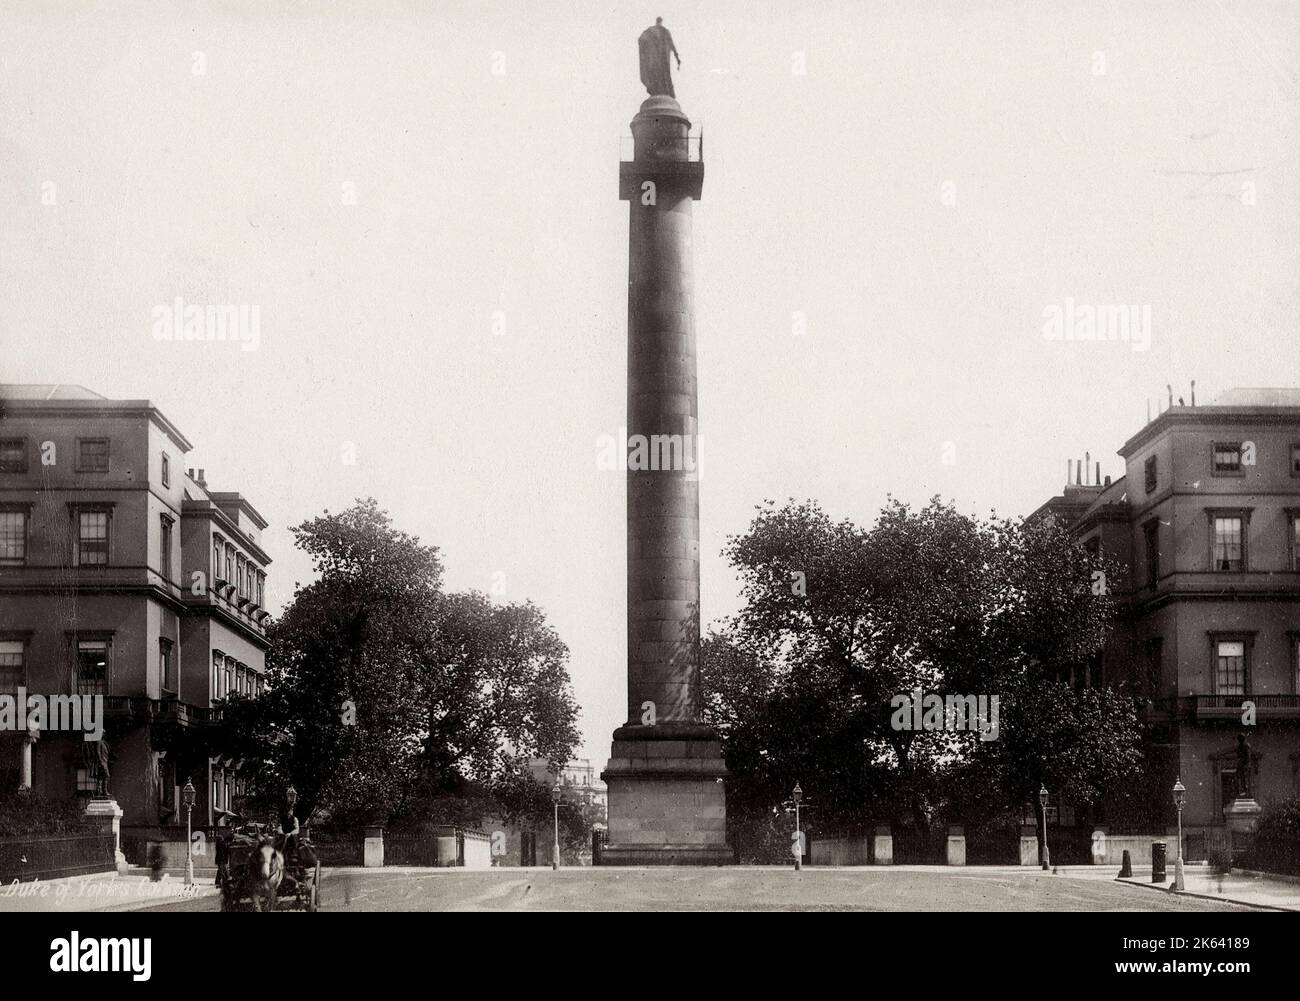 Photographie vintage du 19th siècle : Duke of York Column, Londres Banque D'Images